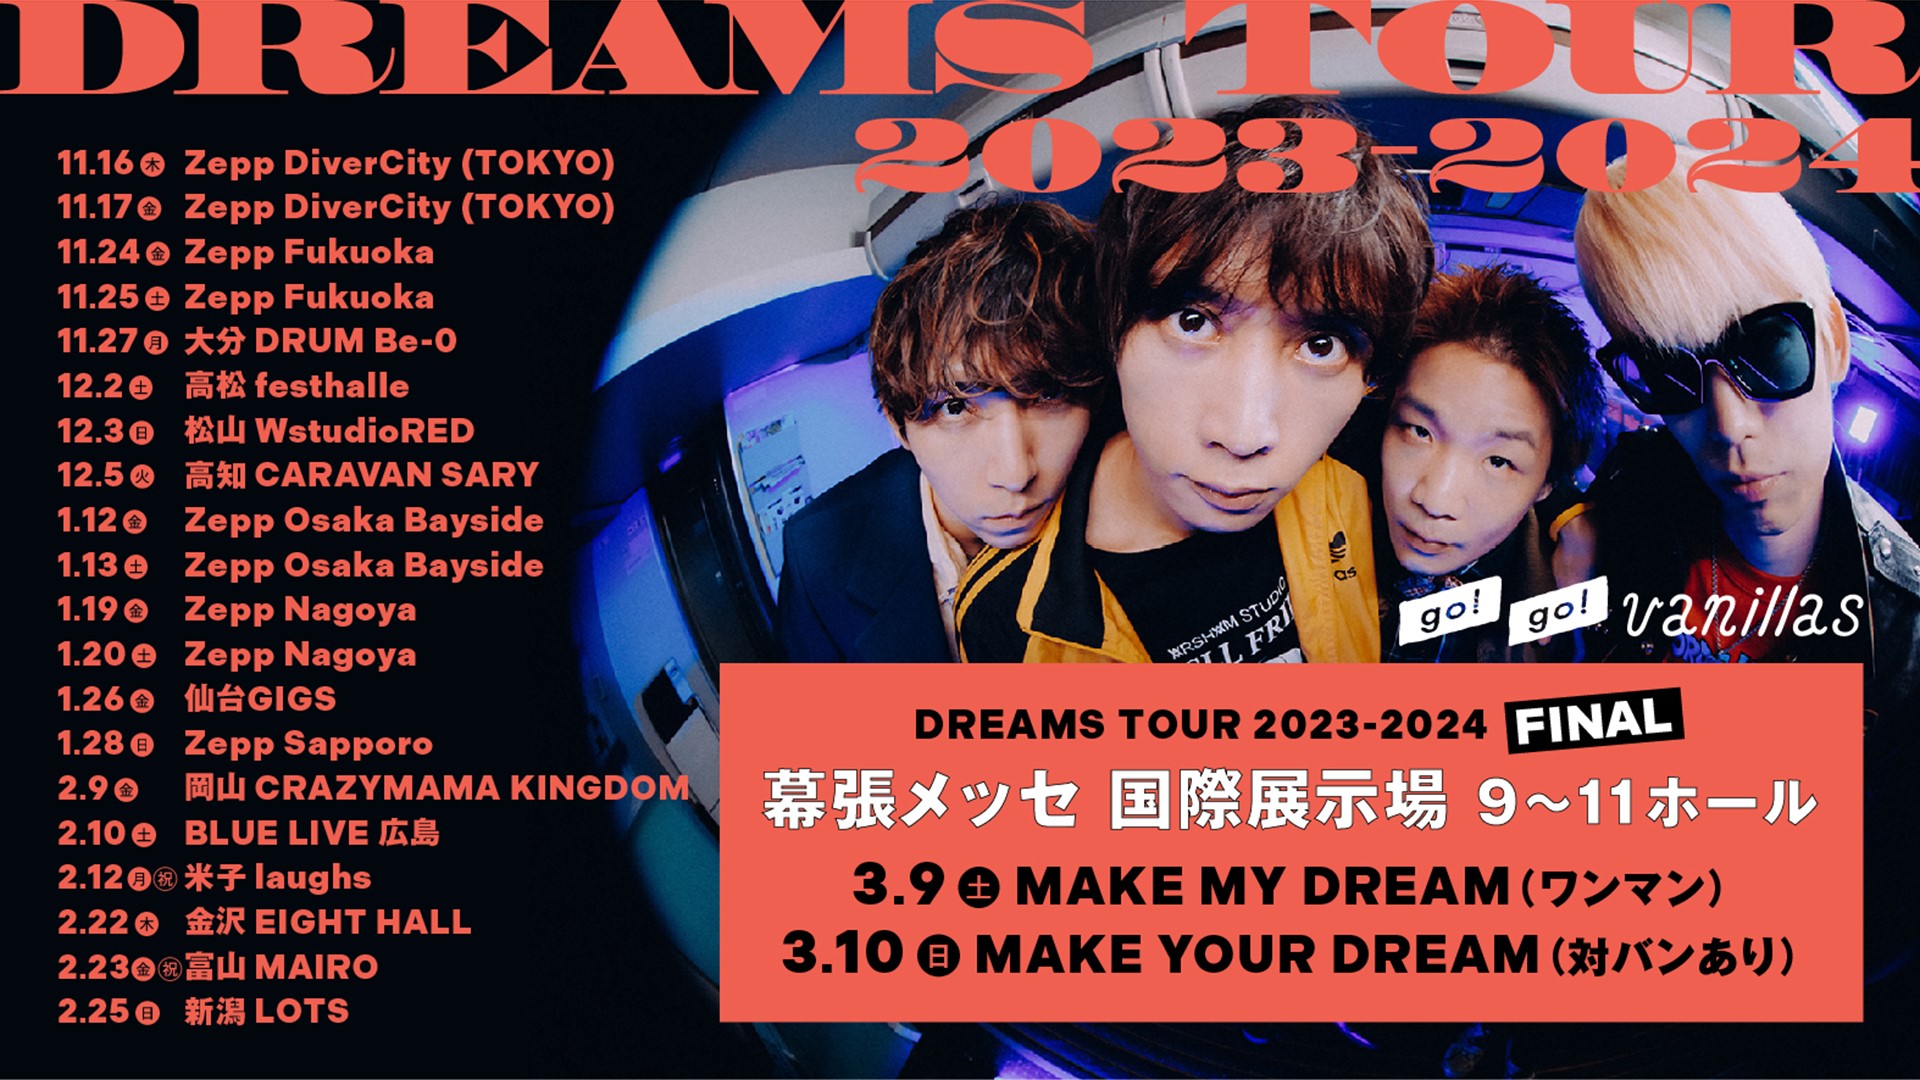 go!go!vanillas DREAMS TOUR 2023-2024